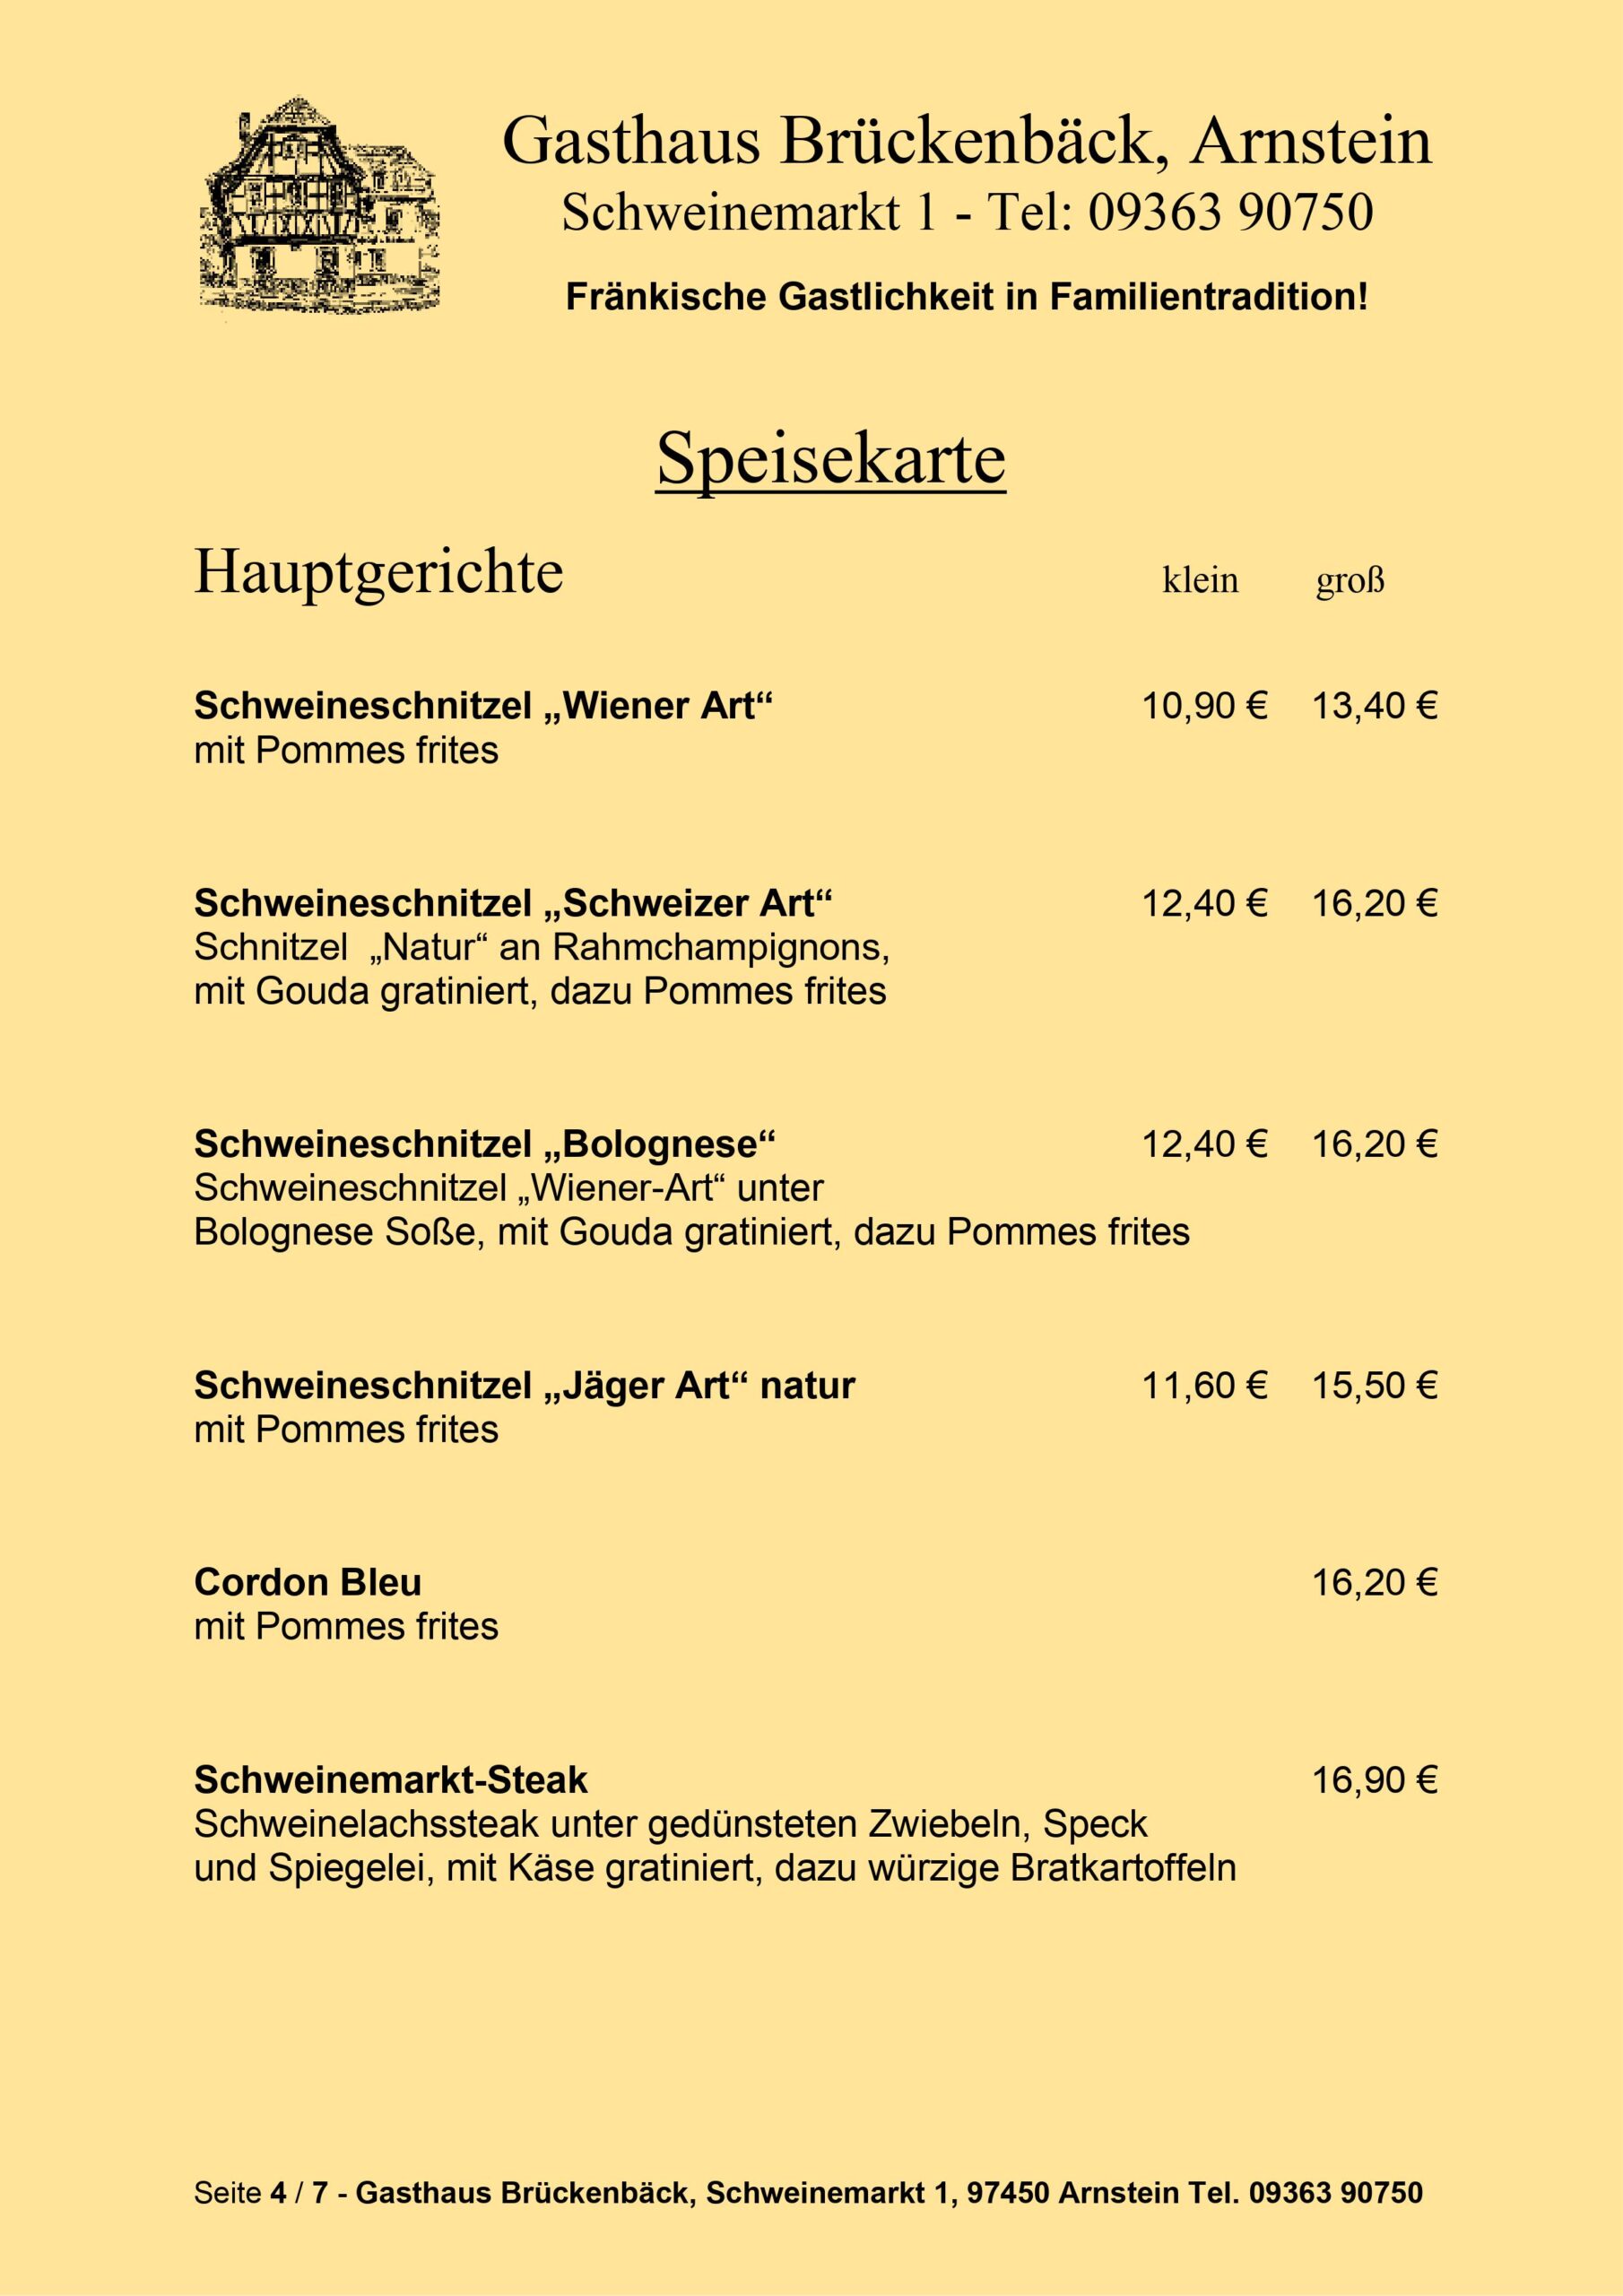 Gasthaus Brückenbäck - Speisekarte Seite 4/7